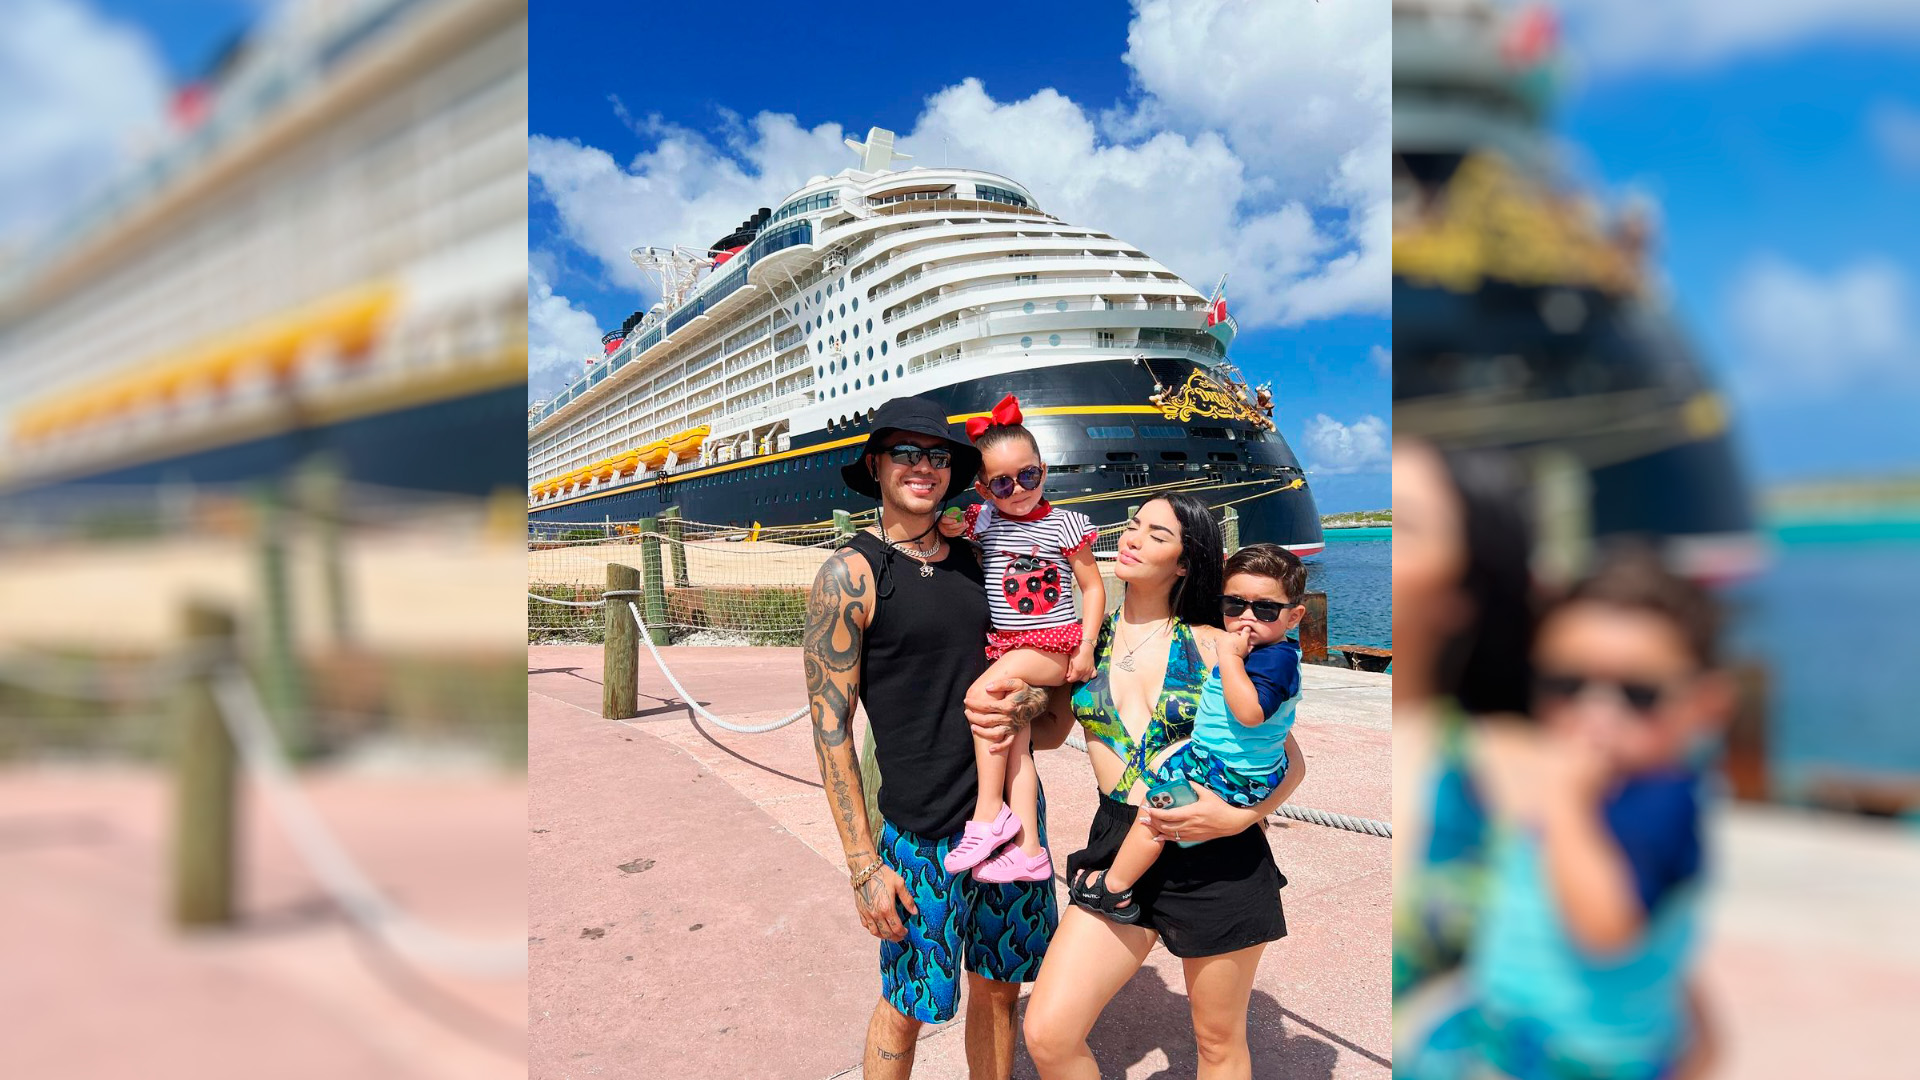 En julio pasado, junto a su familia dio un paseo en el exclusivo crucero de Disneyland Paris (Foto: Instagram @kimberly.loaiza)